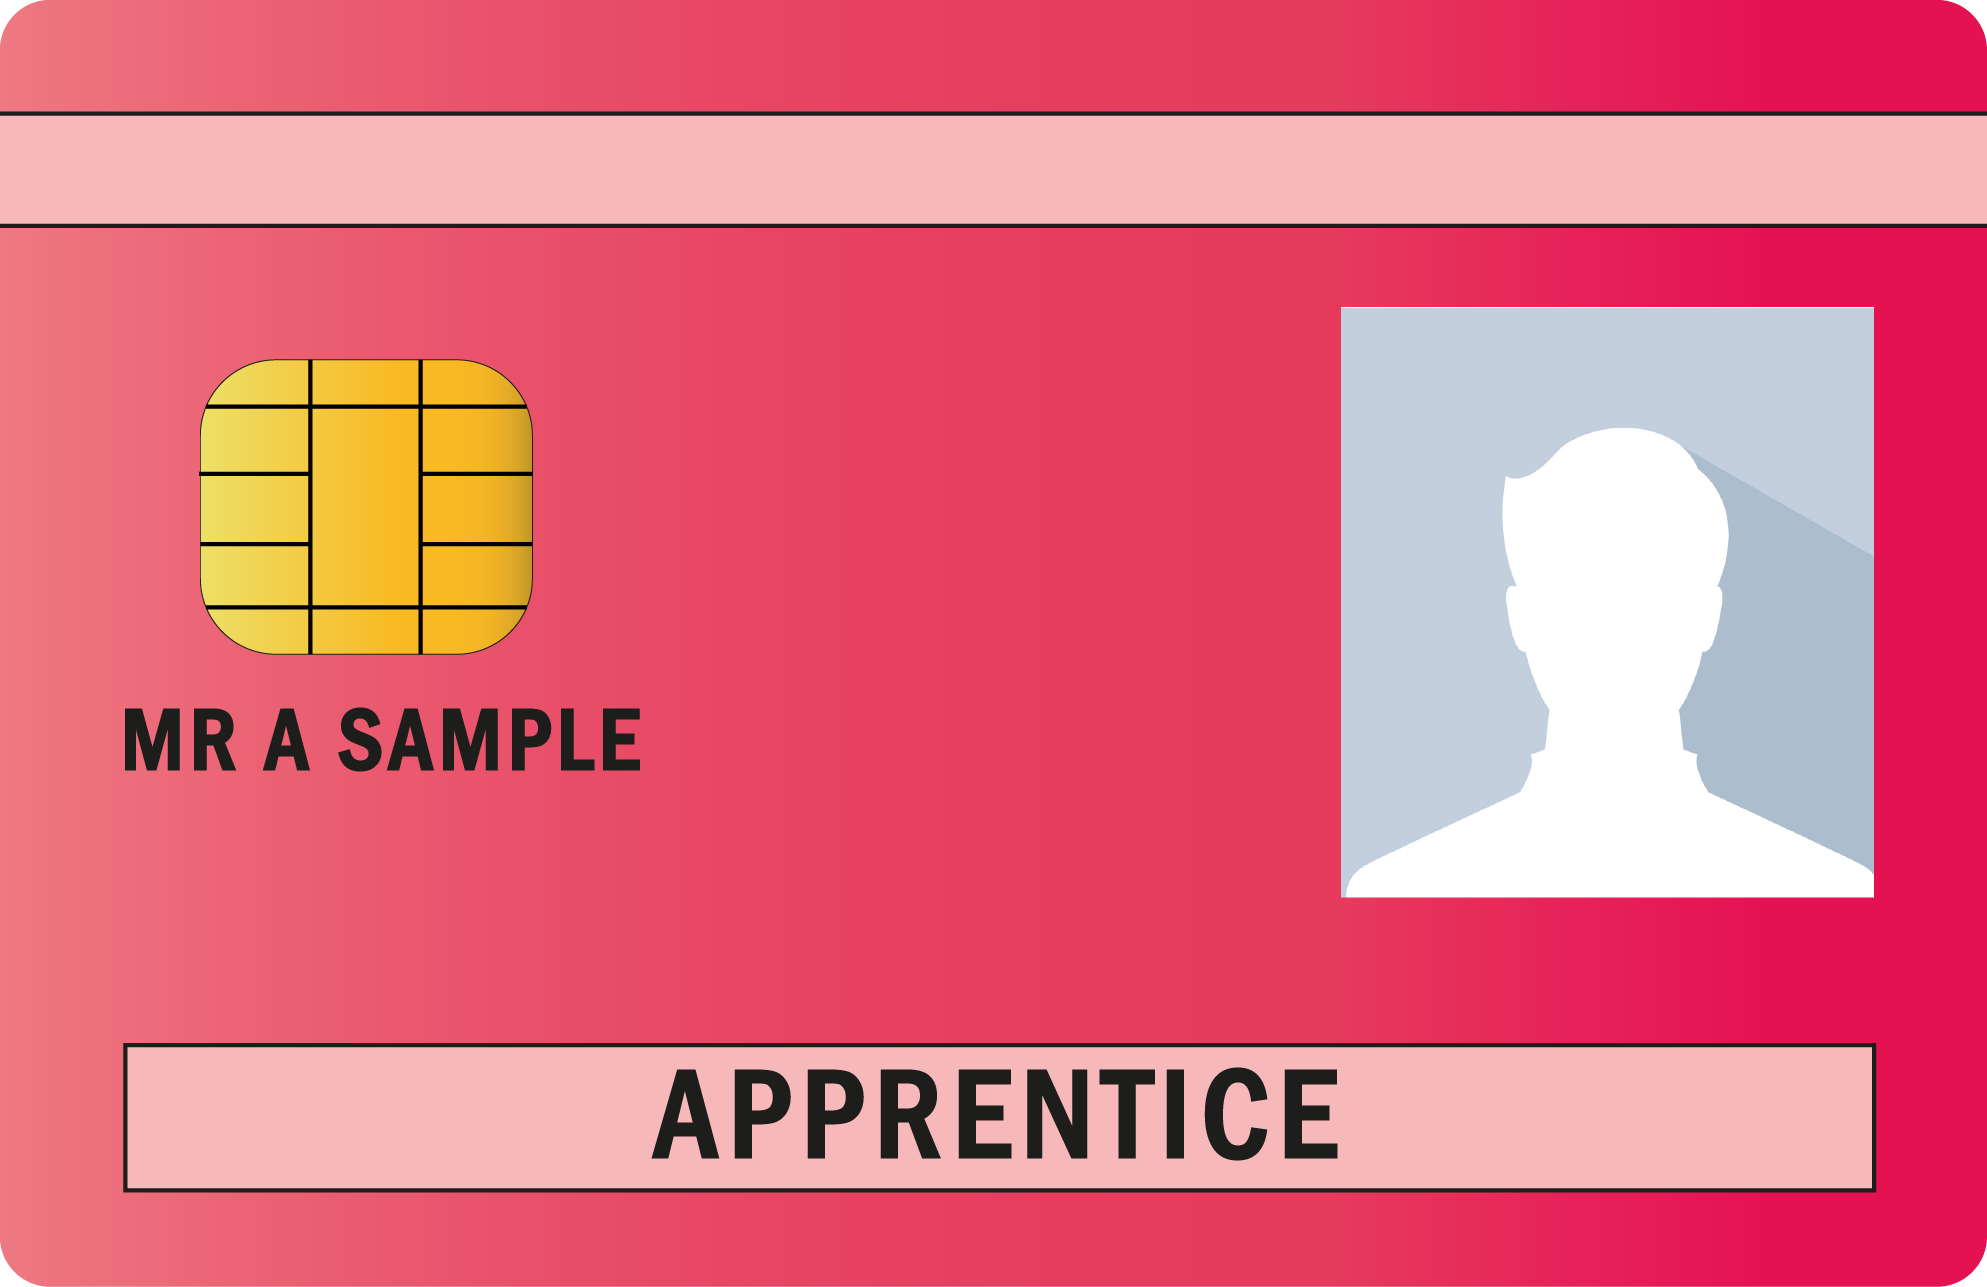 CSCS Apprentice card